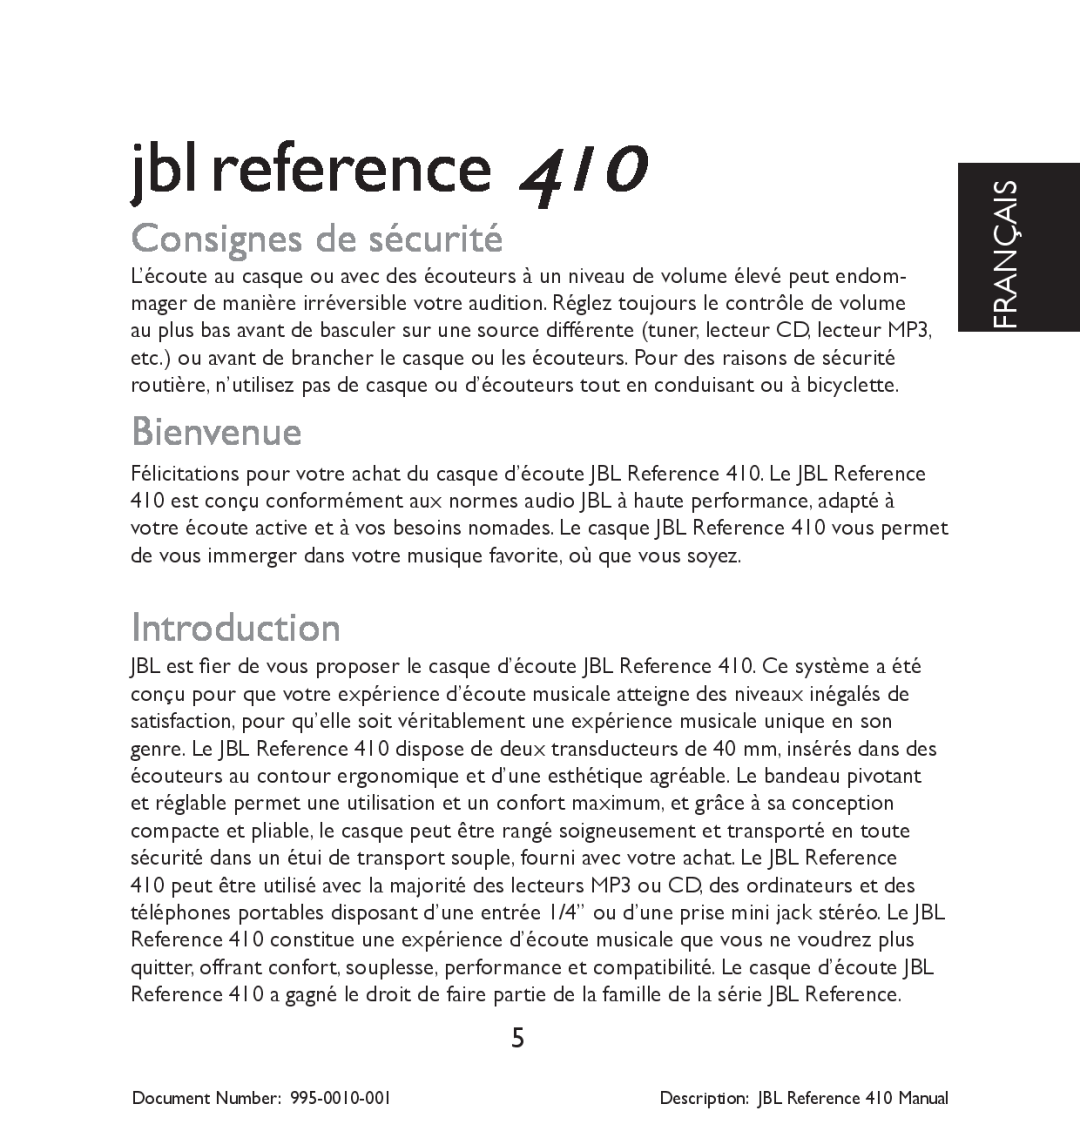 JBL 410 manual Consignes de sécurité, Bienvenue, Français, jbl reference, Introduction 